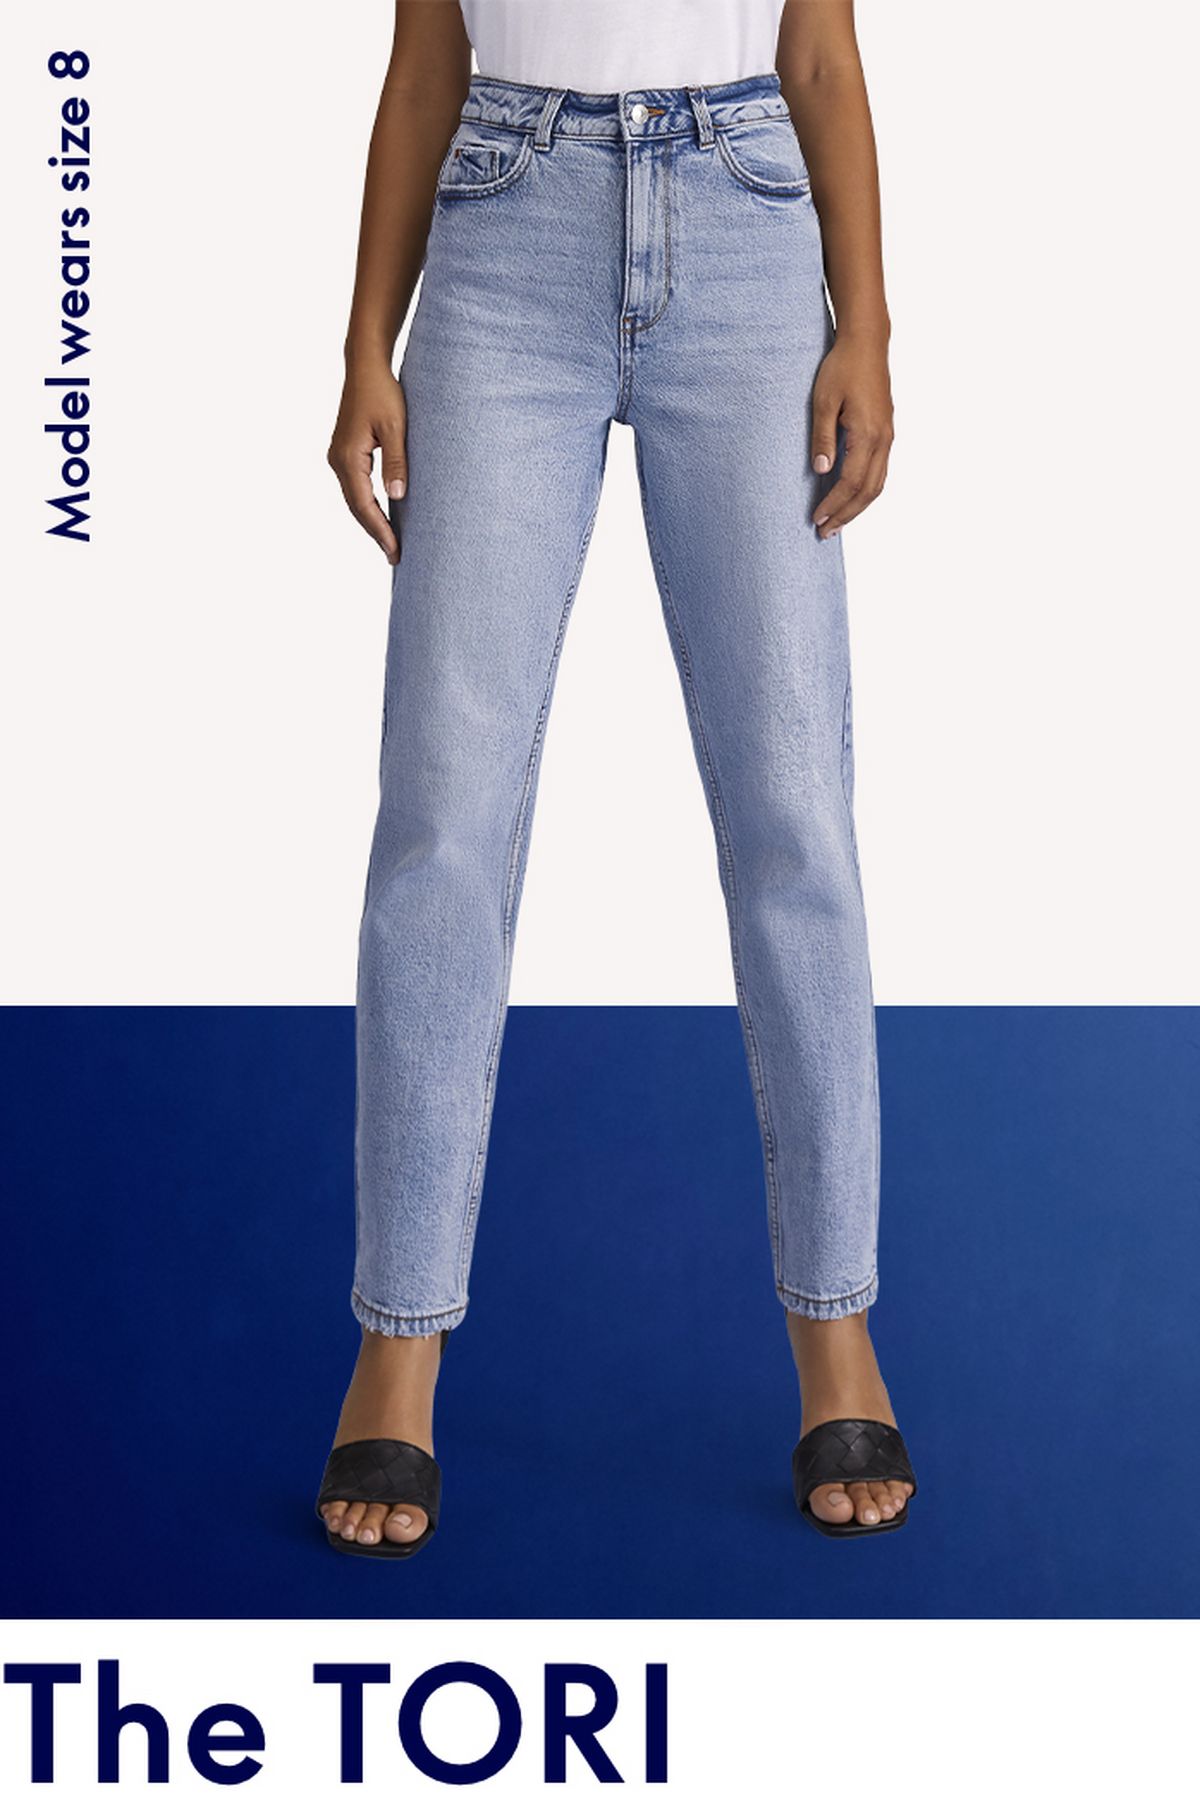  KECKS Women's Jeans Jeans for Women Pants for Women